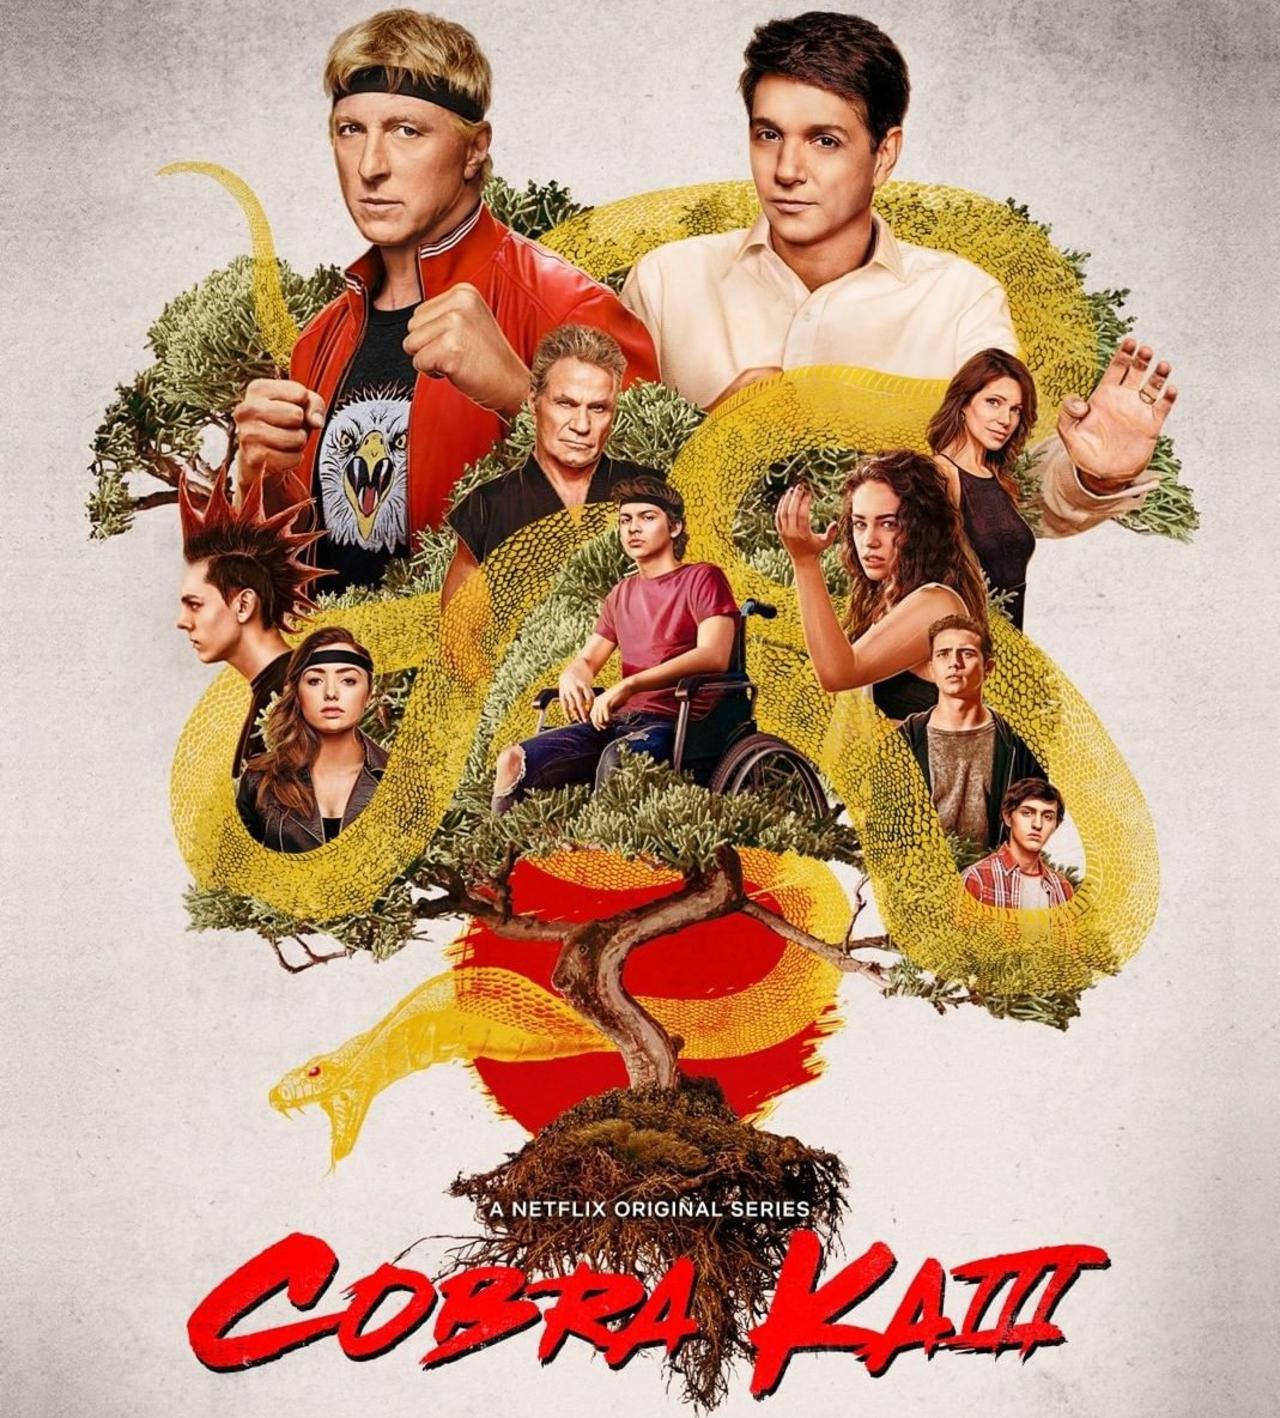 Ya puedes ver en Netflix la nueva temporada de 'Cobra Kai'